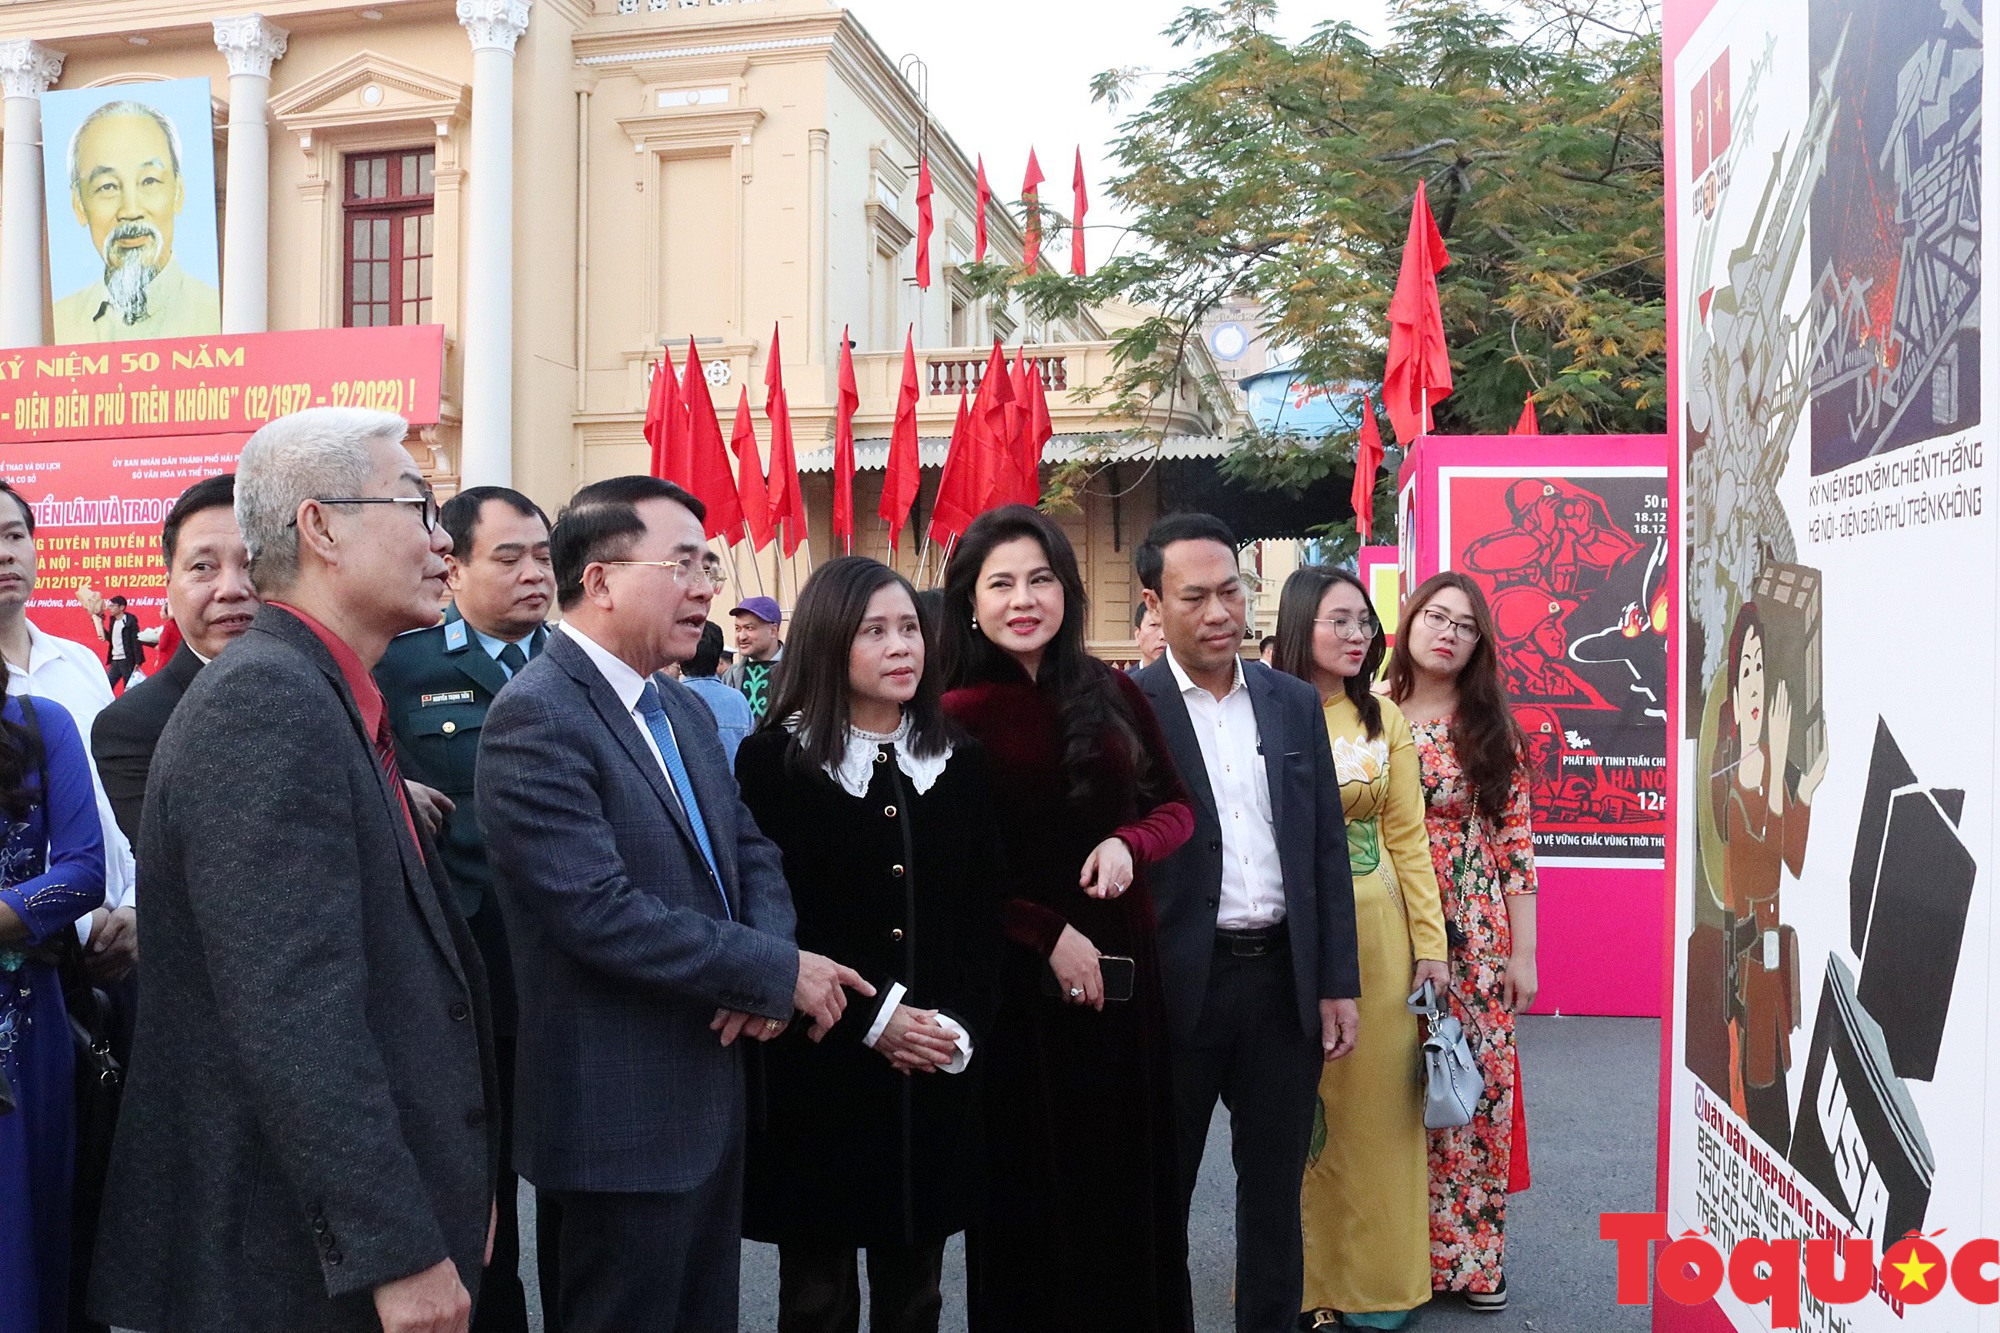 Triển lãm tranh cổ động tấm lớn kỷ niệm 50 năm Chiến thắng Hà Nội – Điện Biên Phủ trên không - Ảnh 7.